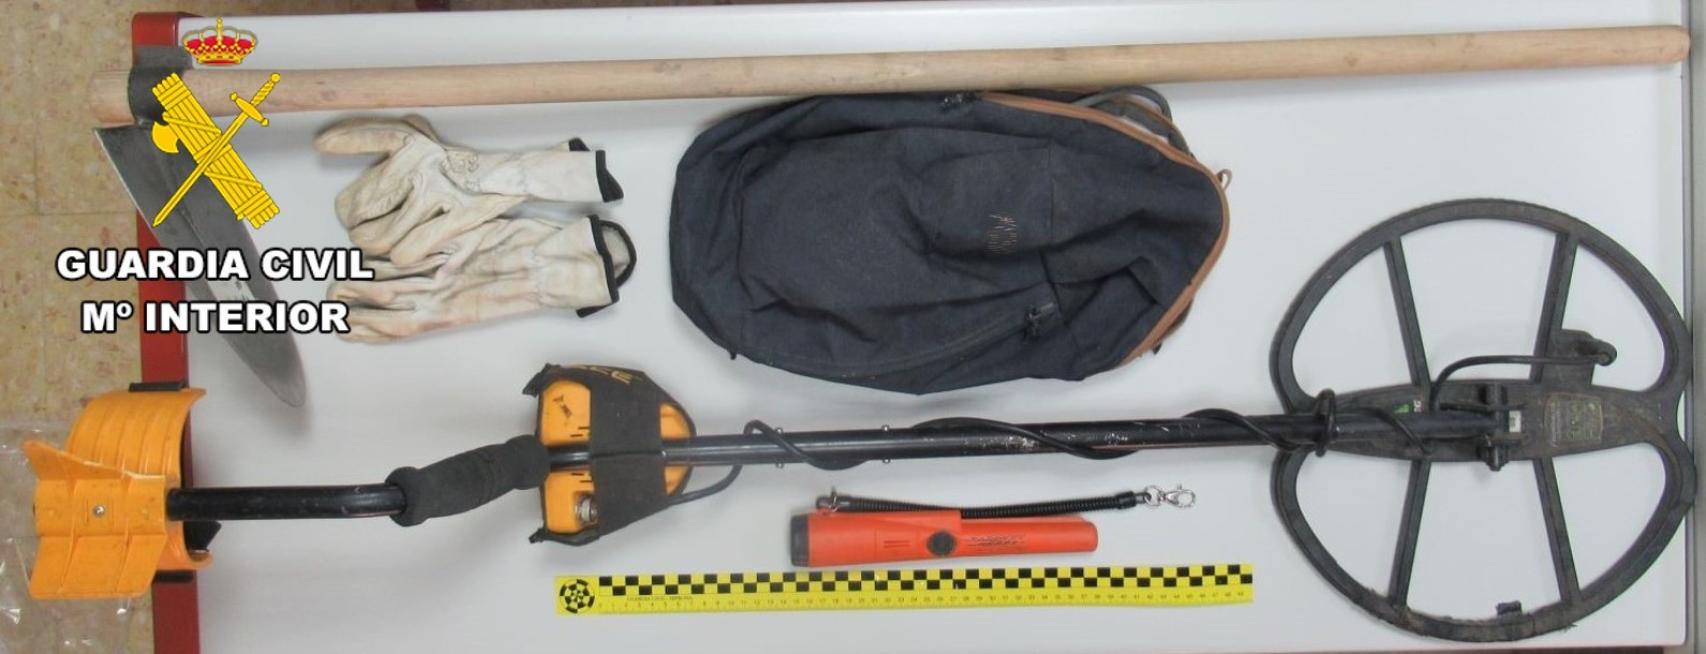 Materiales utilizados por el investigado en el yacimiento de la provincia de Burgos